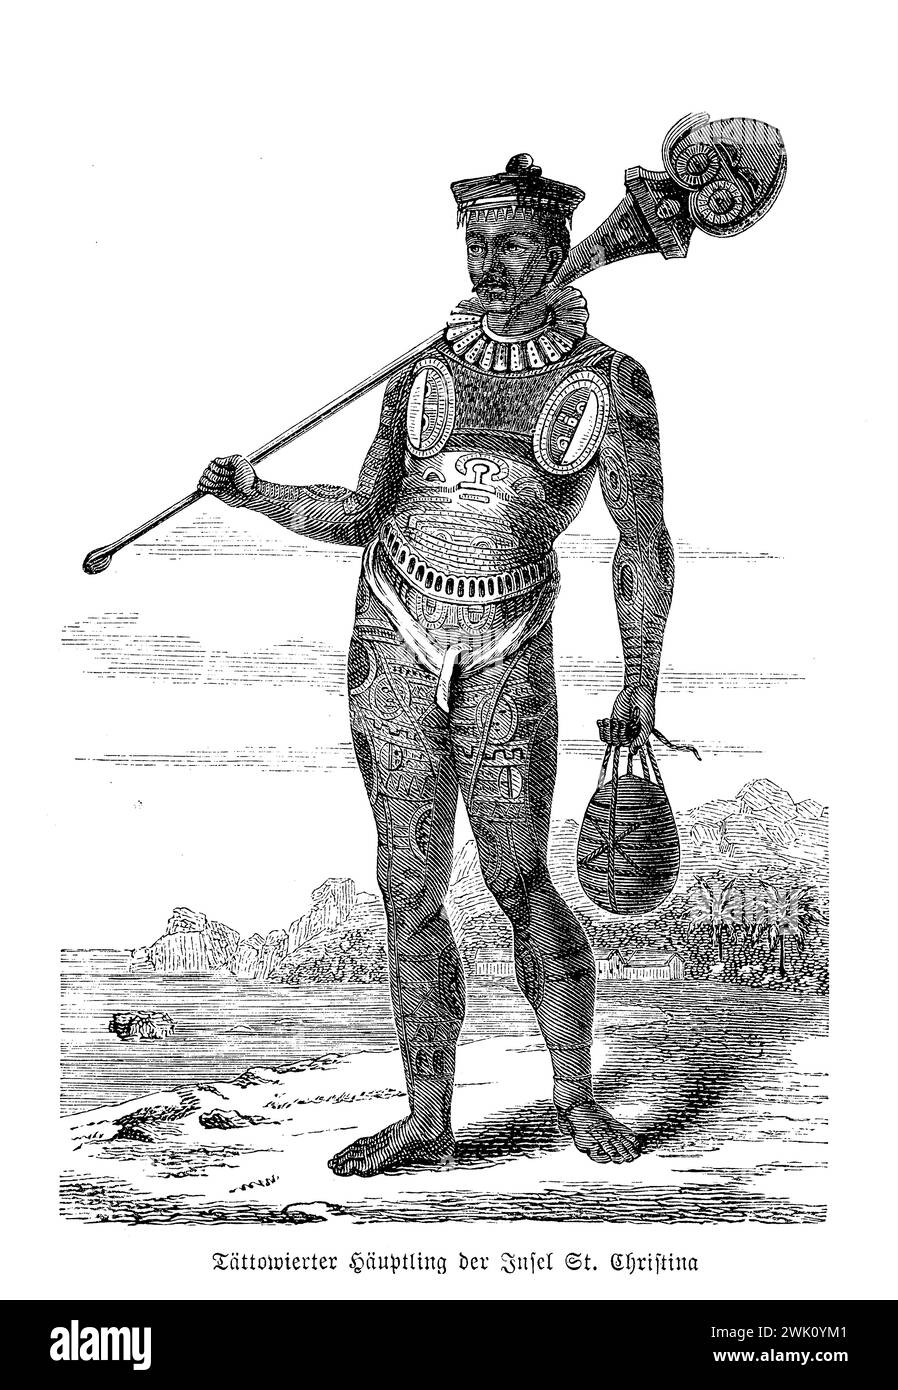 Polynésie française Christina Island, portrait du chef de tribu tatoué, avec le corps complètement recouvert de marques similaires au travail en filigrane, illustration du XIXe siècle Banque D'Images